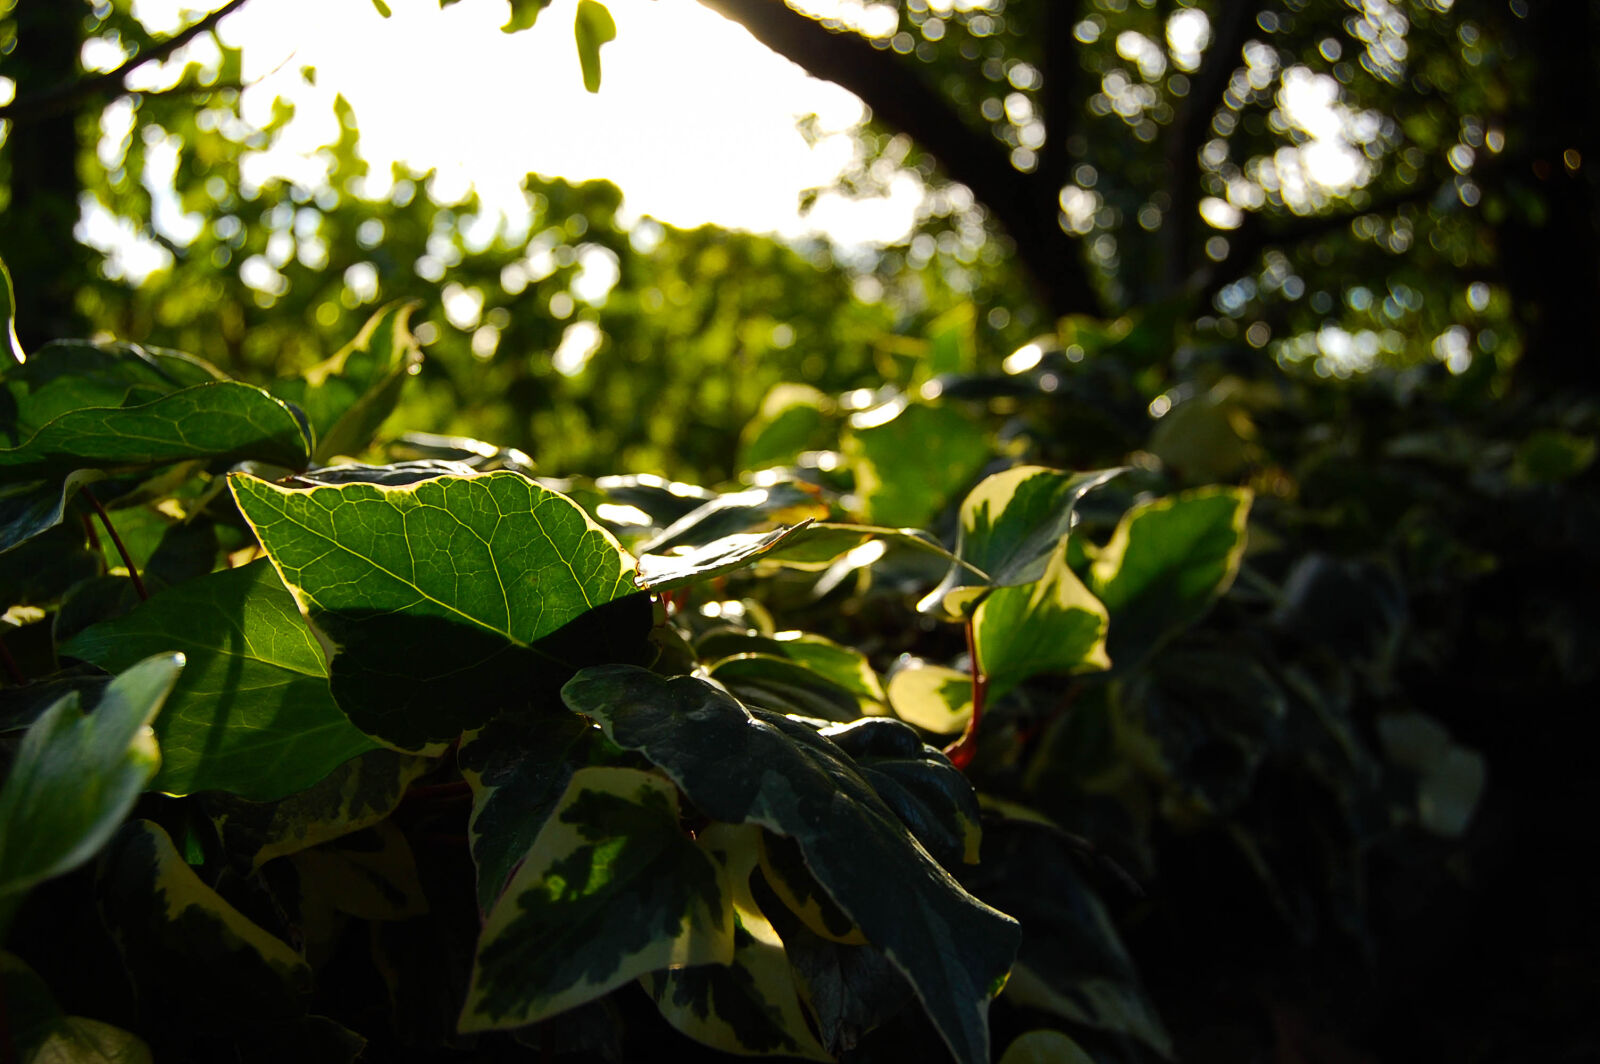 Nikon D40 + Nikon AF-S DX Nikkor 18-55mm F3.5-5.6G II sample photo. Green, leaf, nature, sun photography